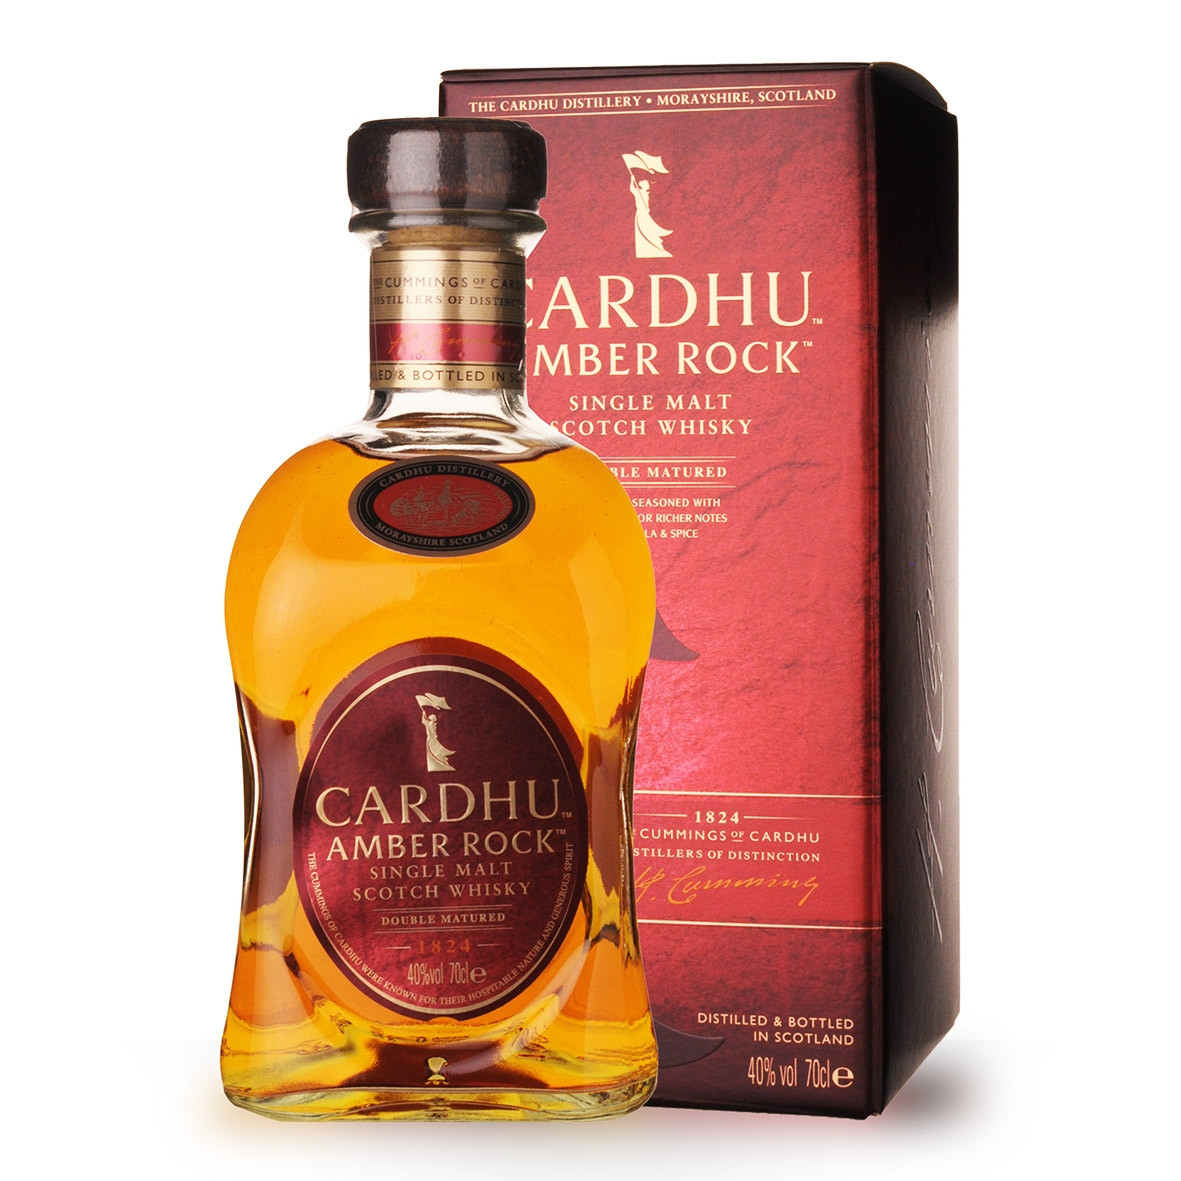 Acheter du Whisky Cardhu Amber Rock 70cl vendu en Etui sur notre